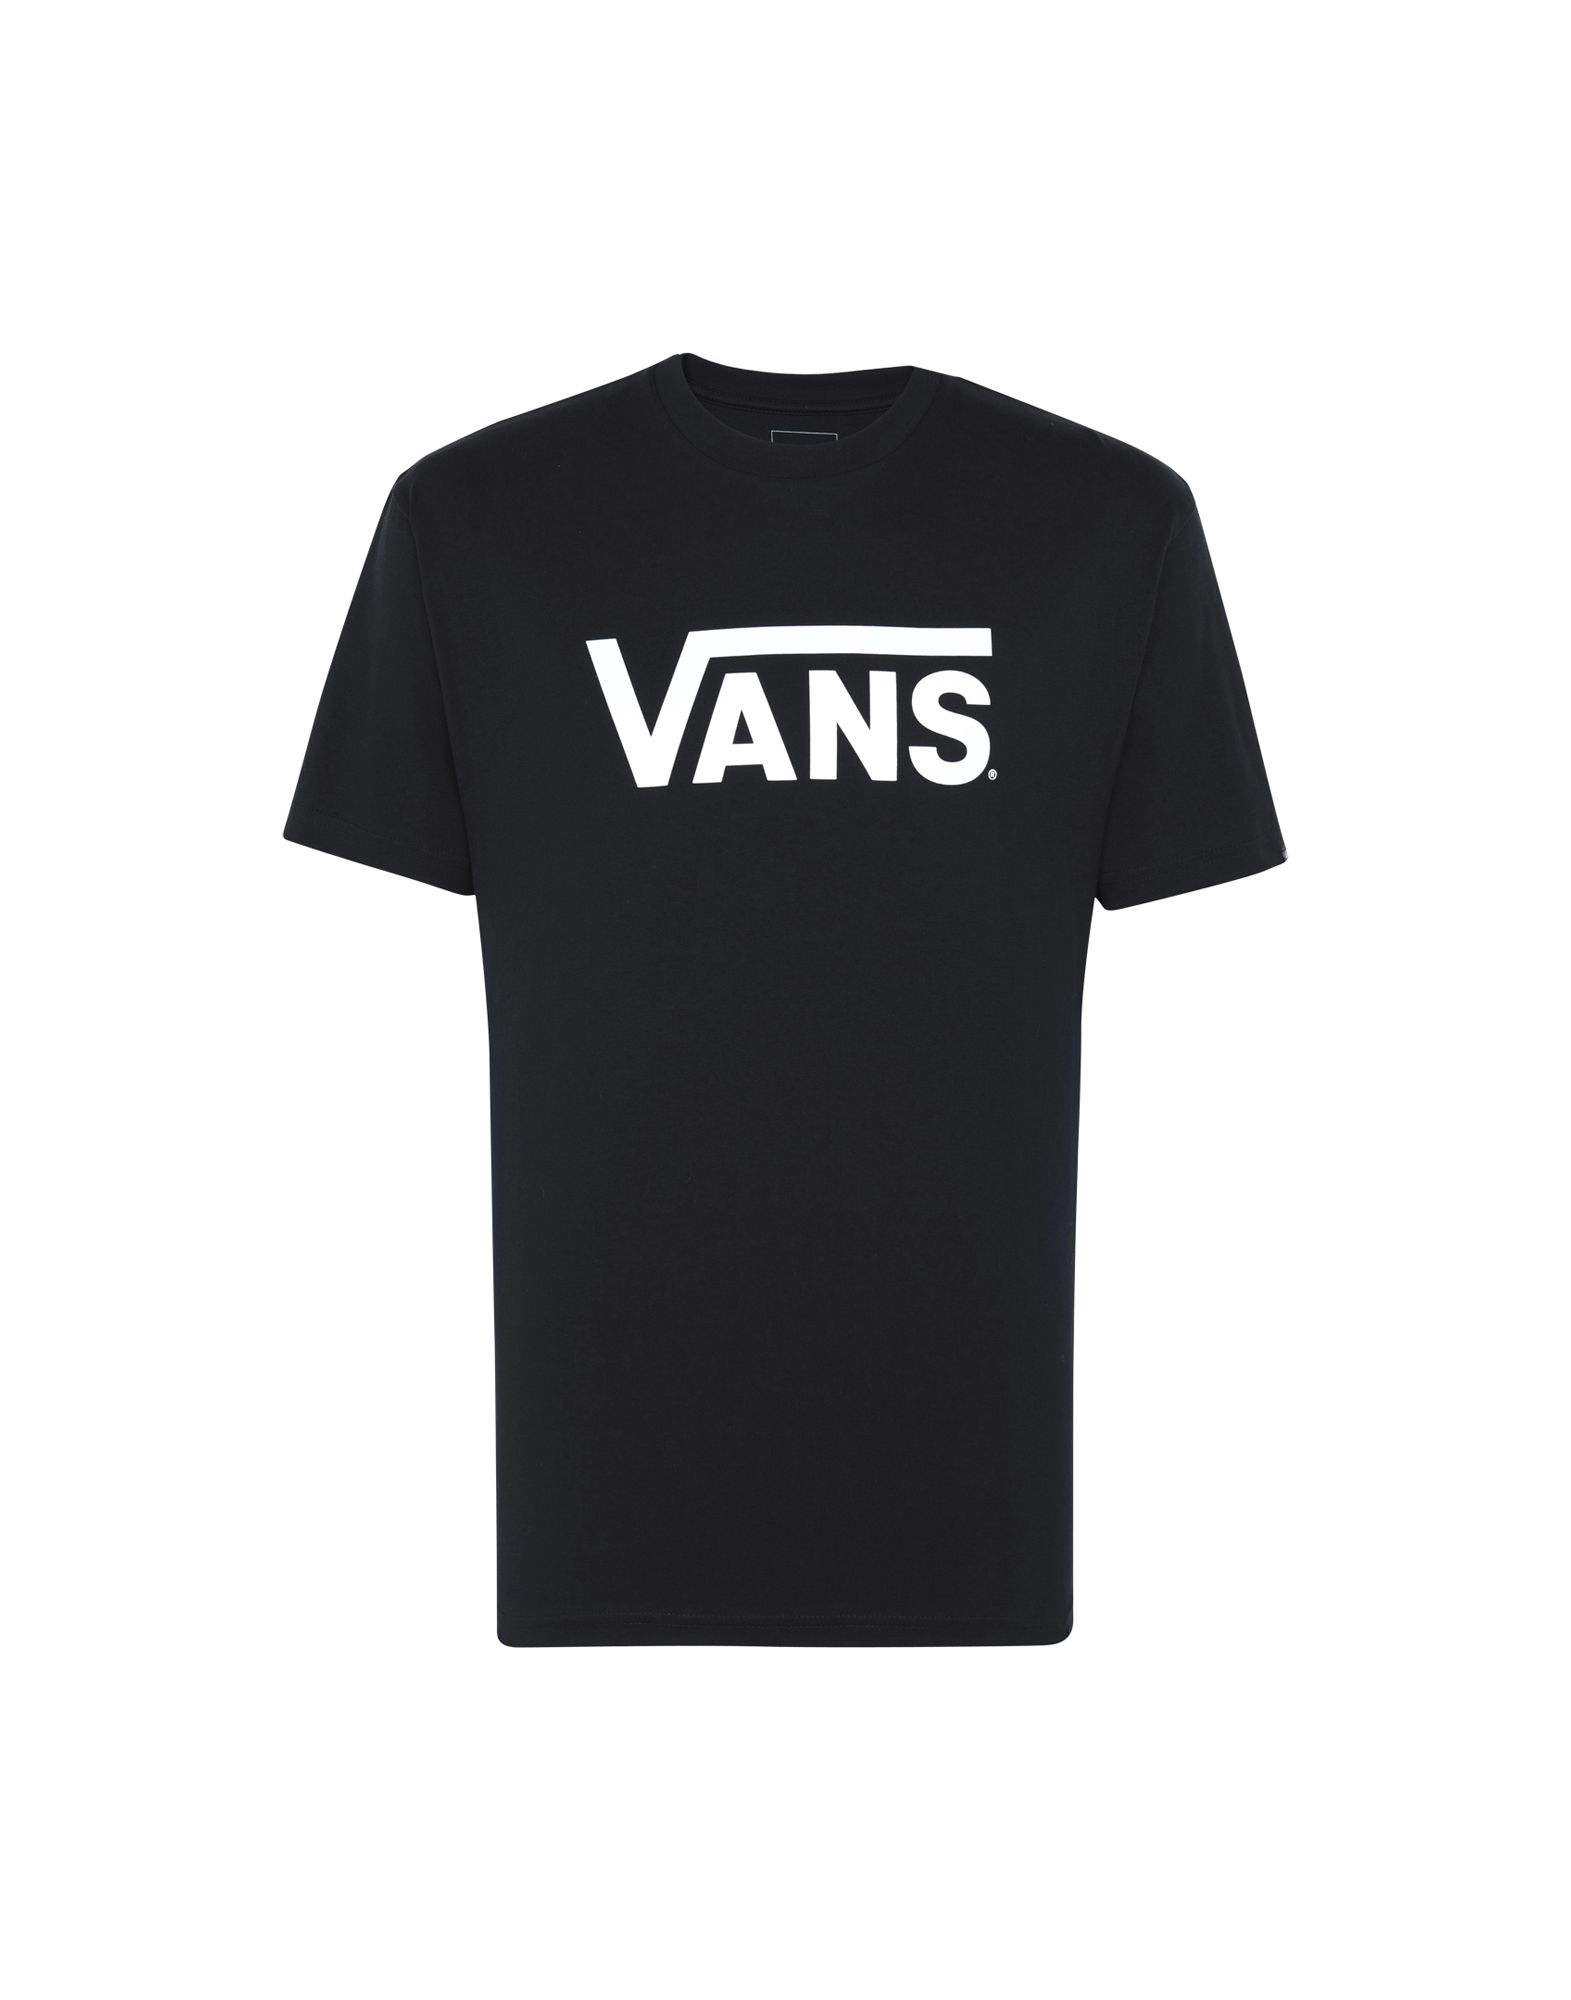 《送料無料》VANS メンズ T シャツ ブラック XS コットン 100% MN VANS CLASSIC